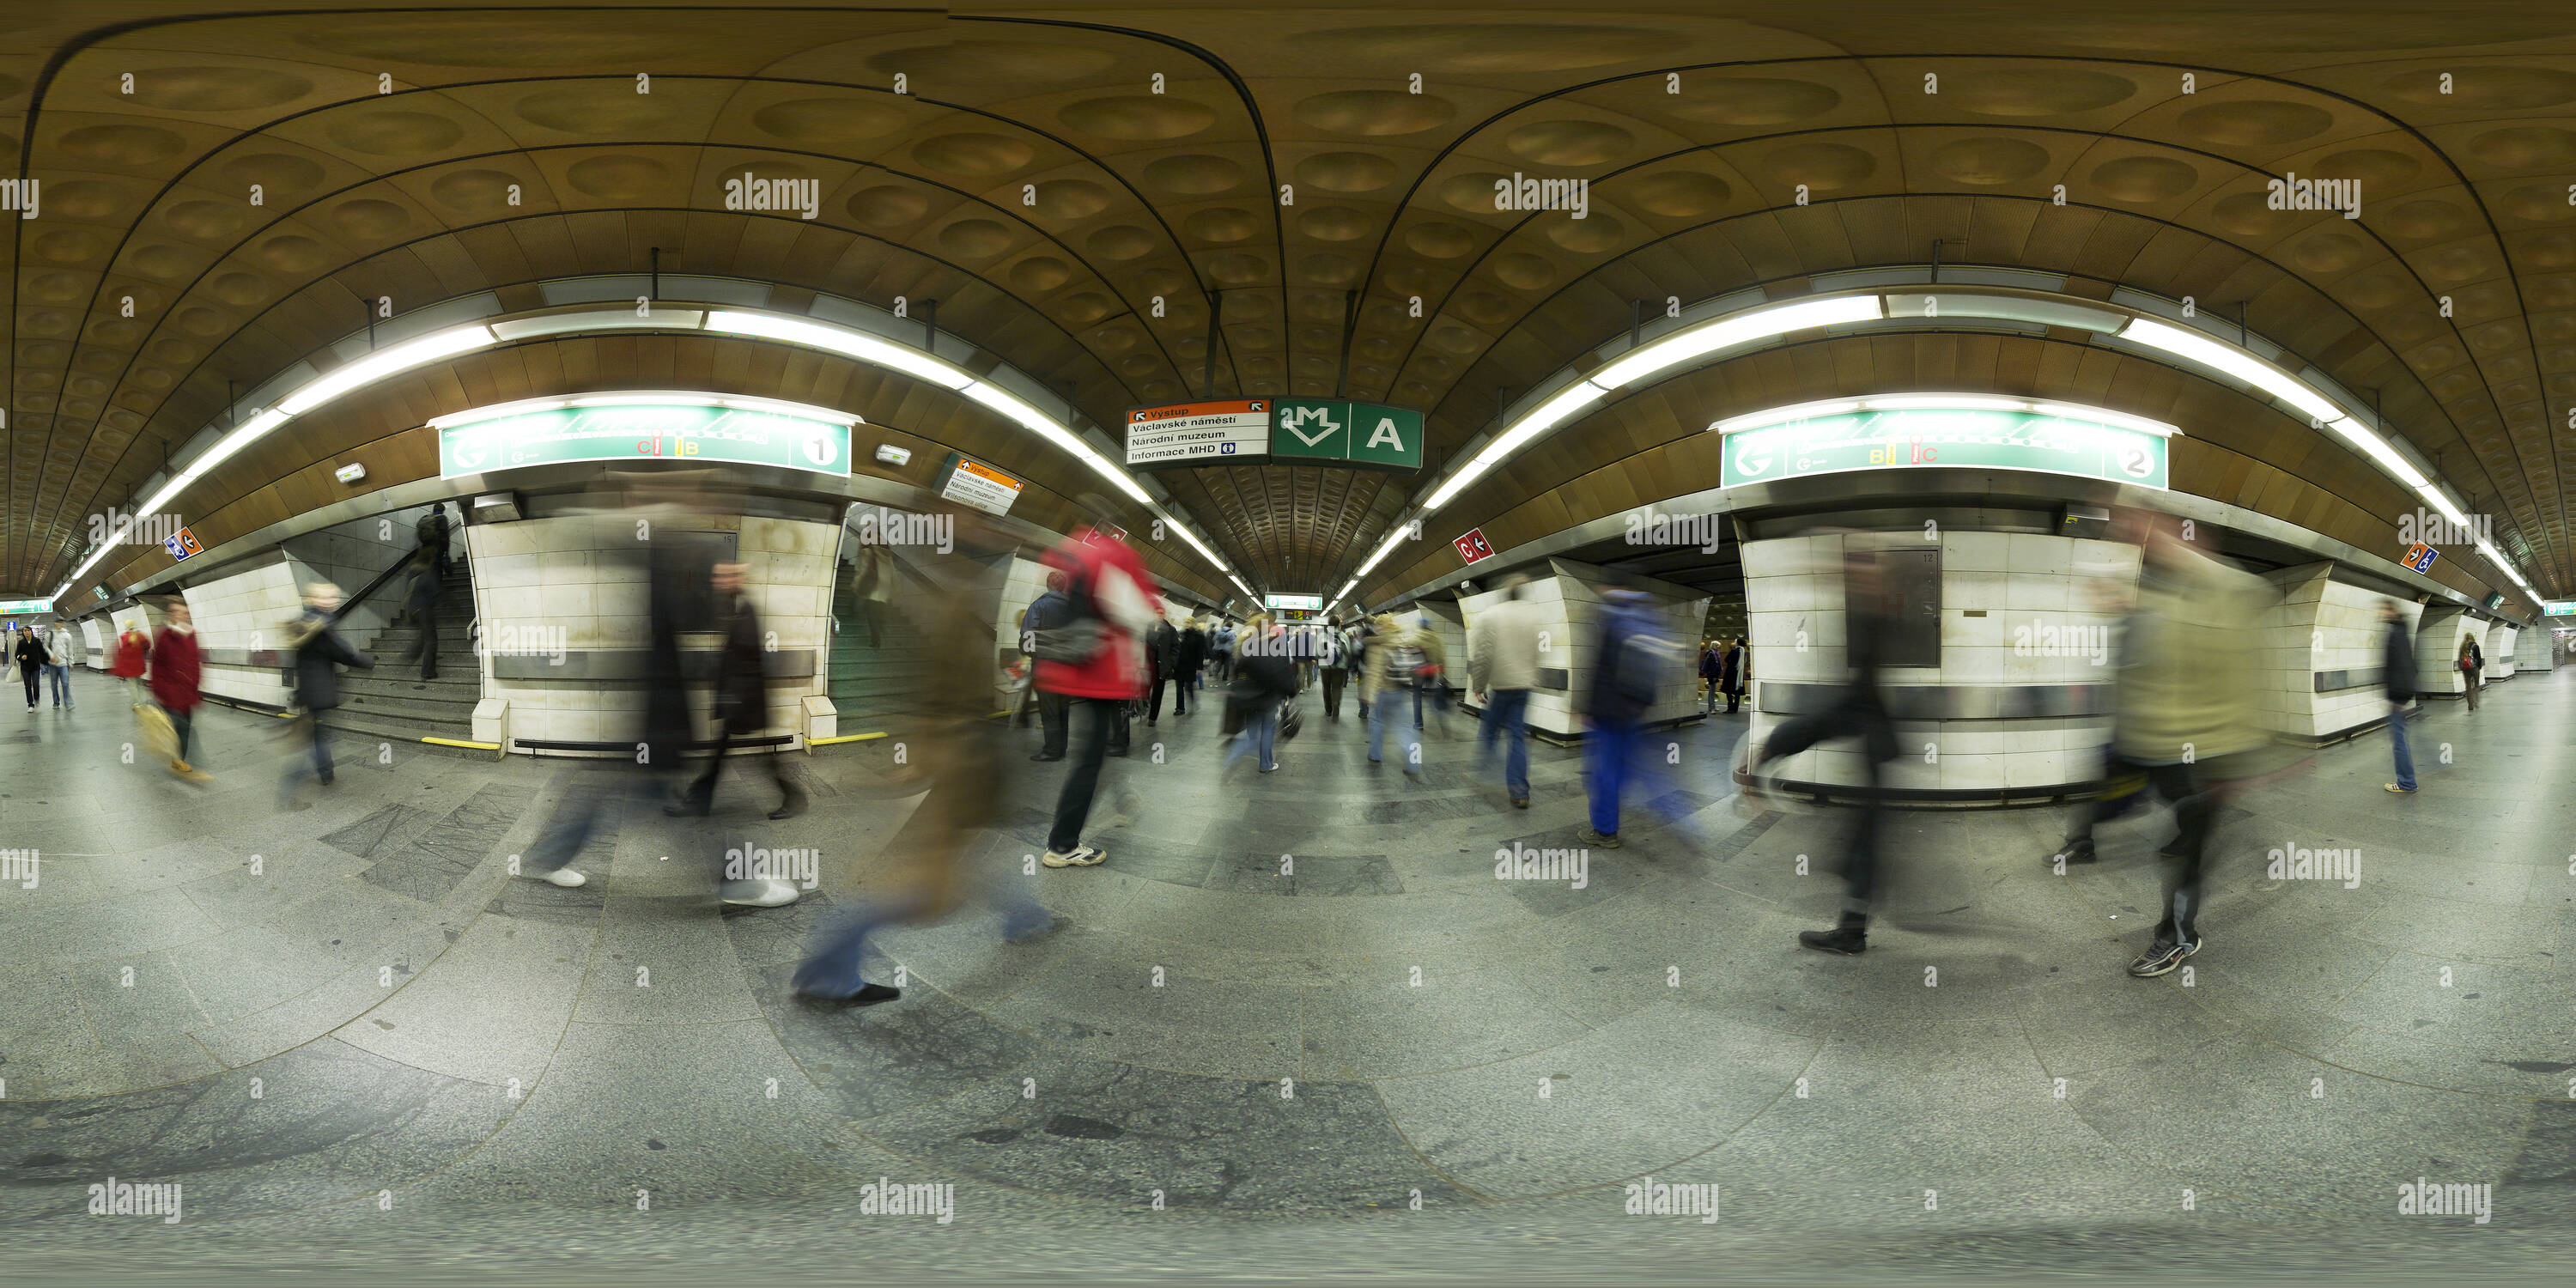 360 degree panoramic view of Muzeum metro station